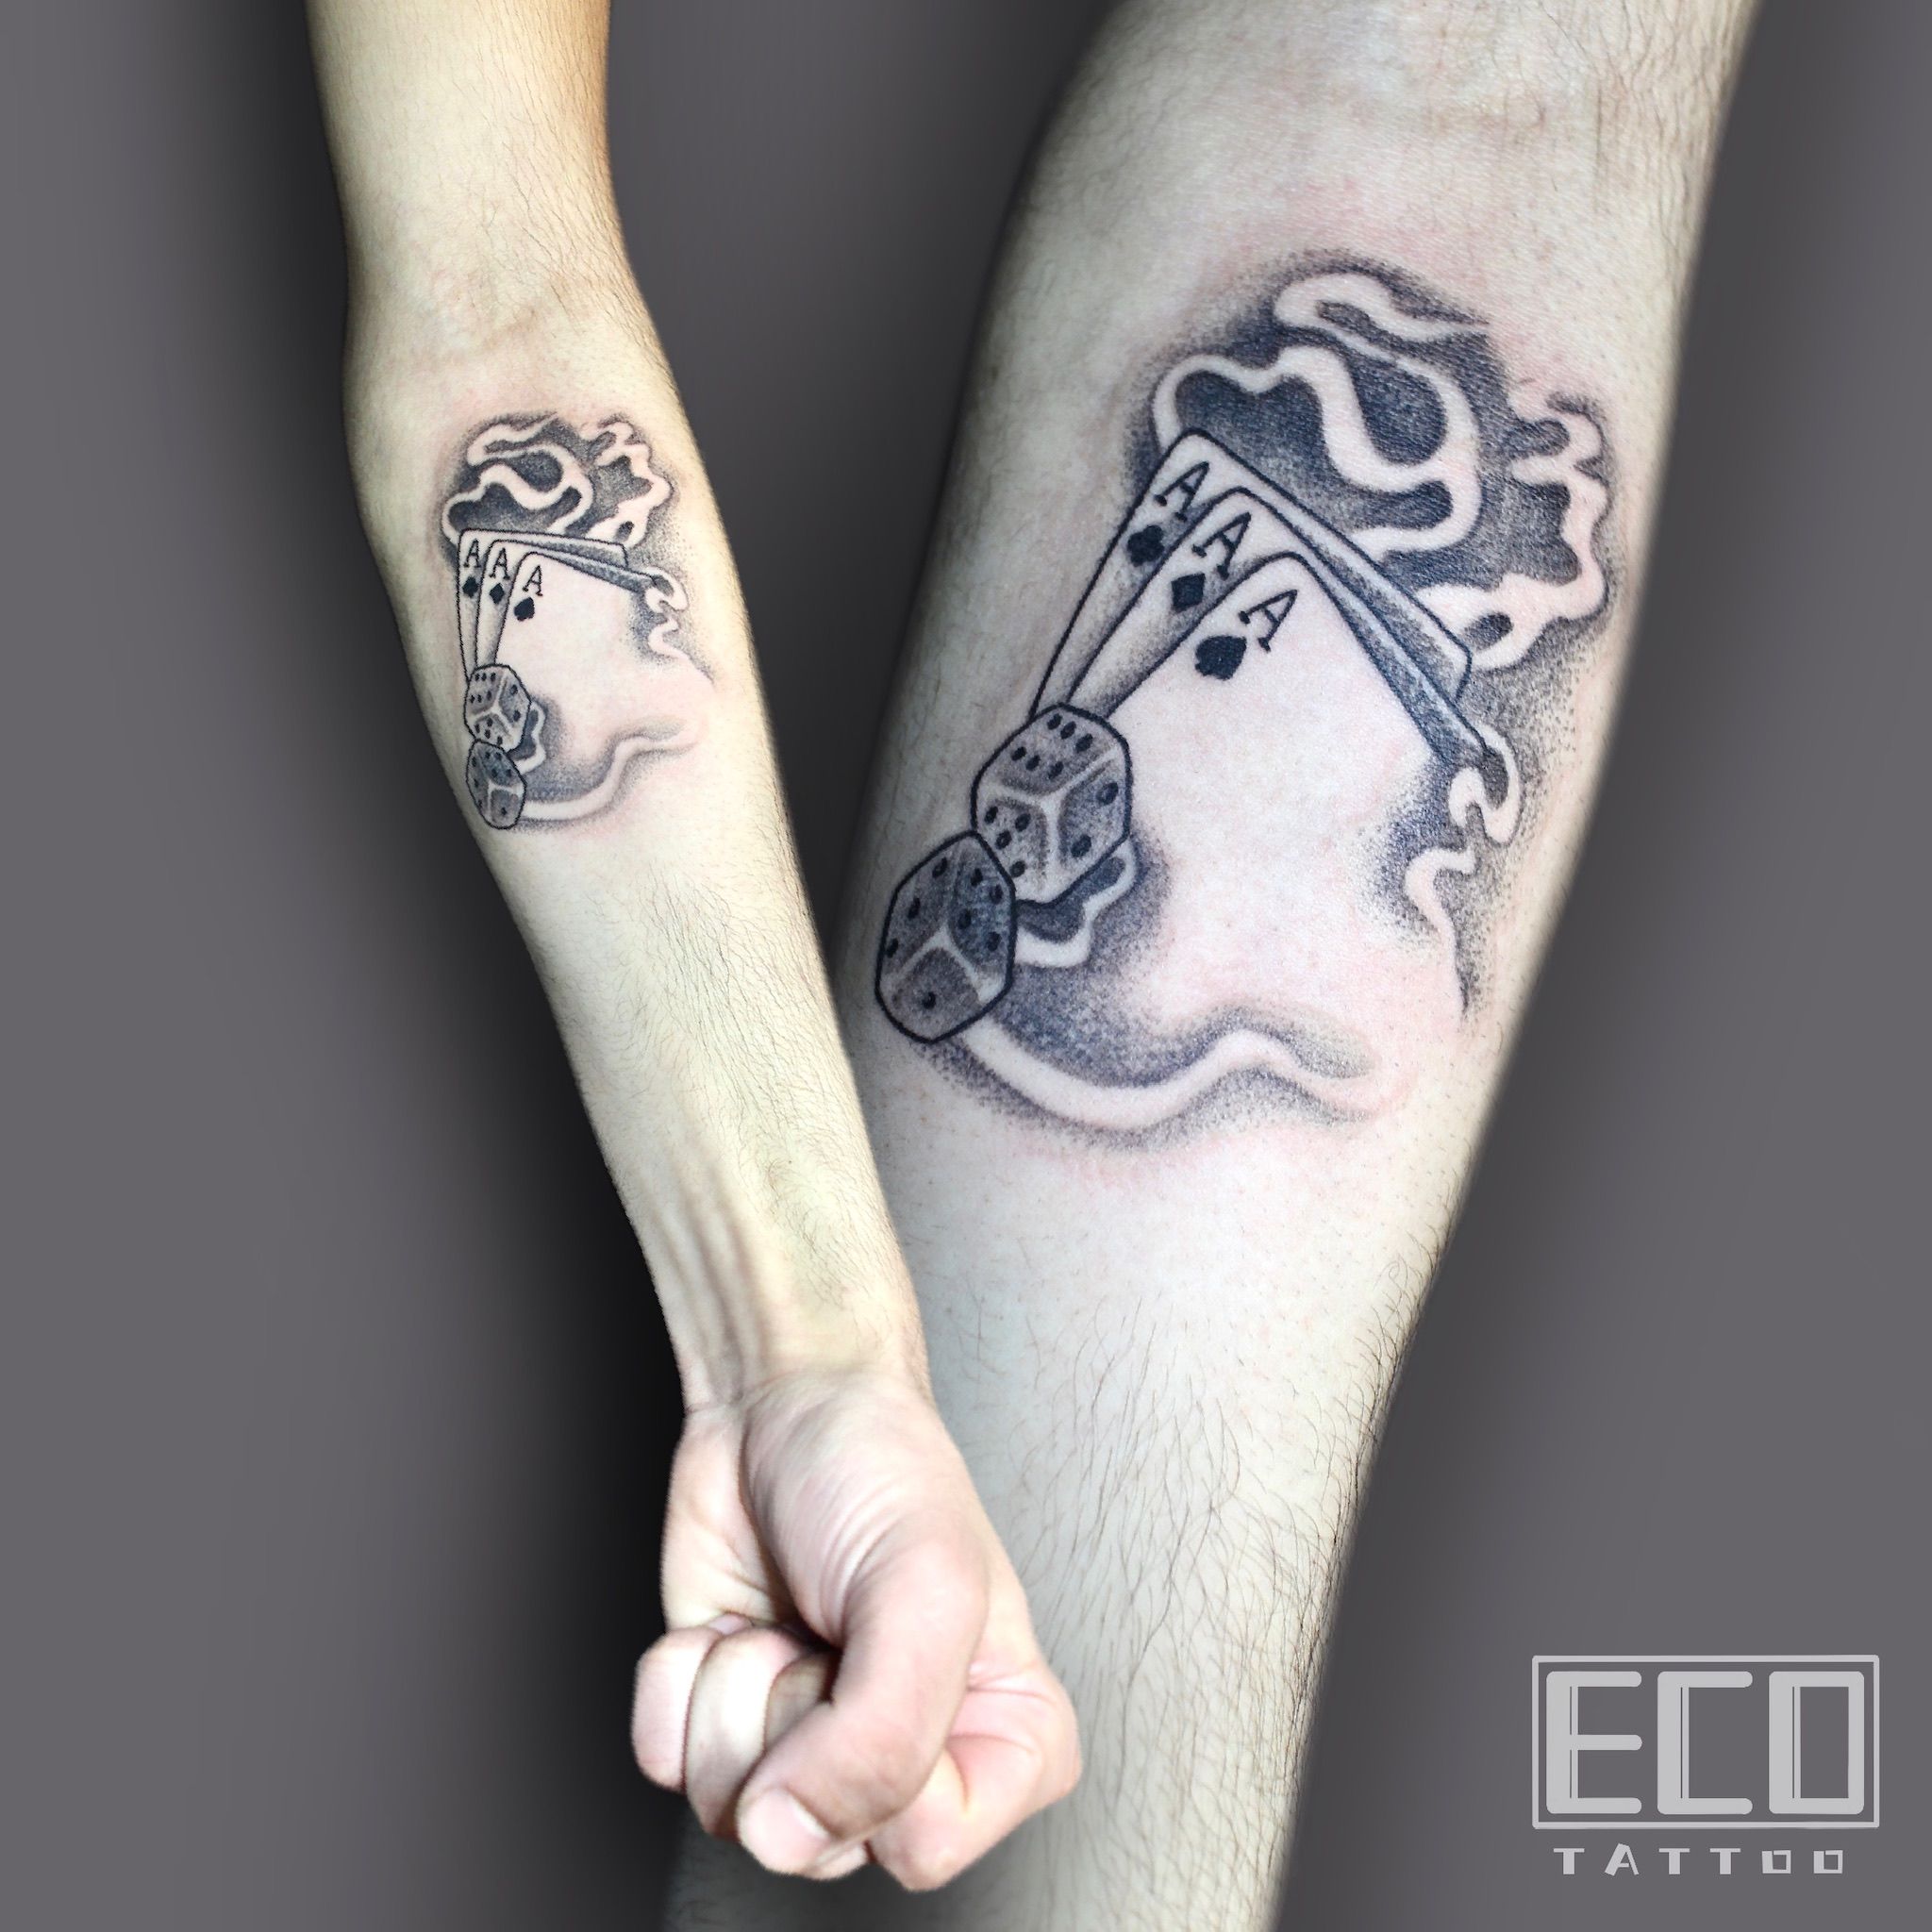 Leg Tattoo ideas #mandalaart @thetattooshop_newdelhi @pacificmalldelhi # tattoo #tattoos #inked #legtattoos #legtattooidea #tattooart… | Instagram